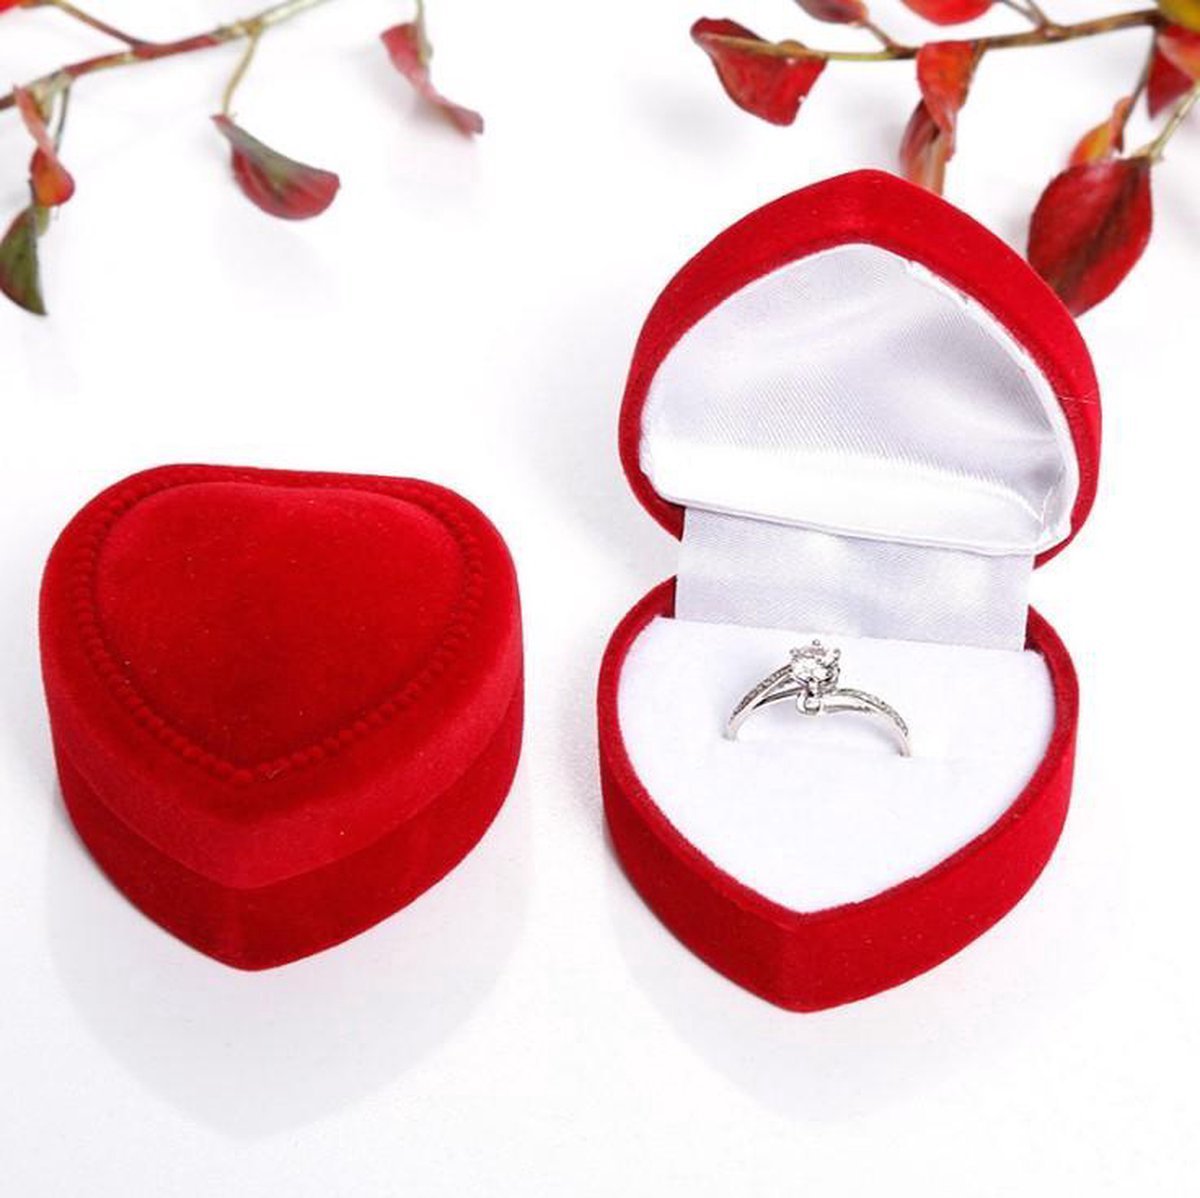 *** Rode Hartvormige Sieradendoos - Bruiloft - Huwelijk -Velvet Ringdoos - Sieraden Gift Box - van Heble® ***